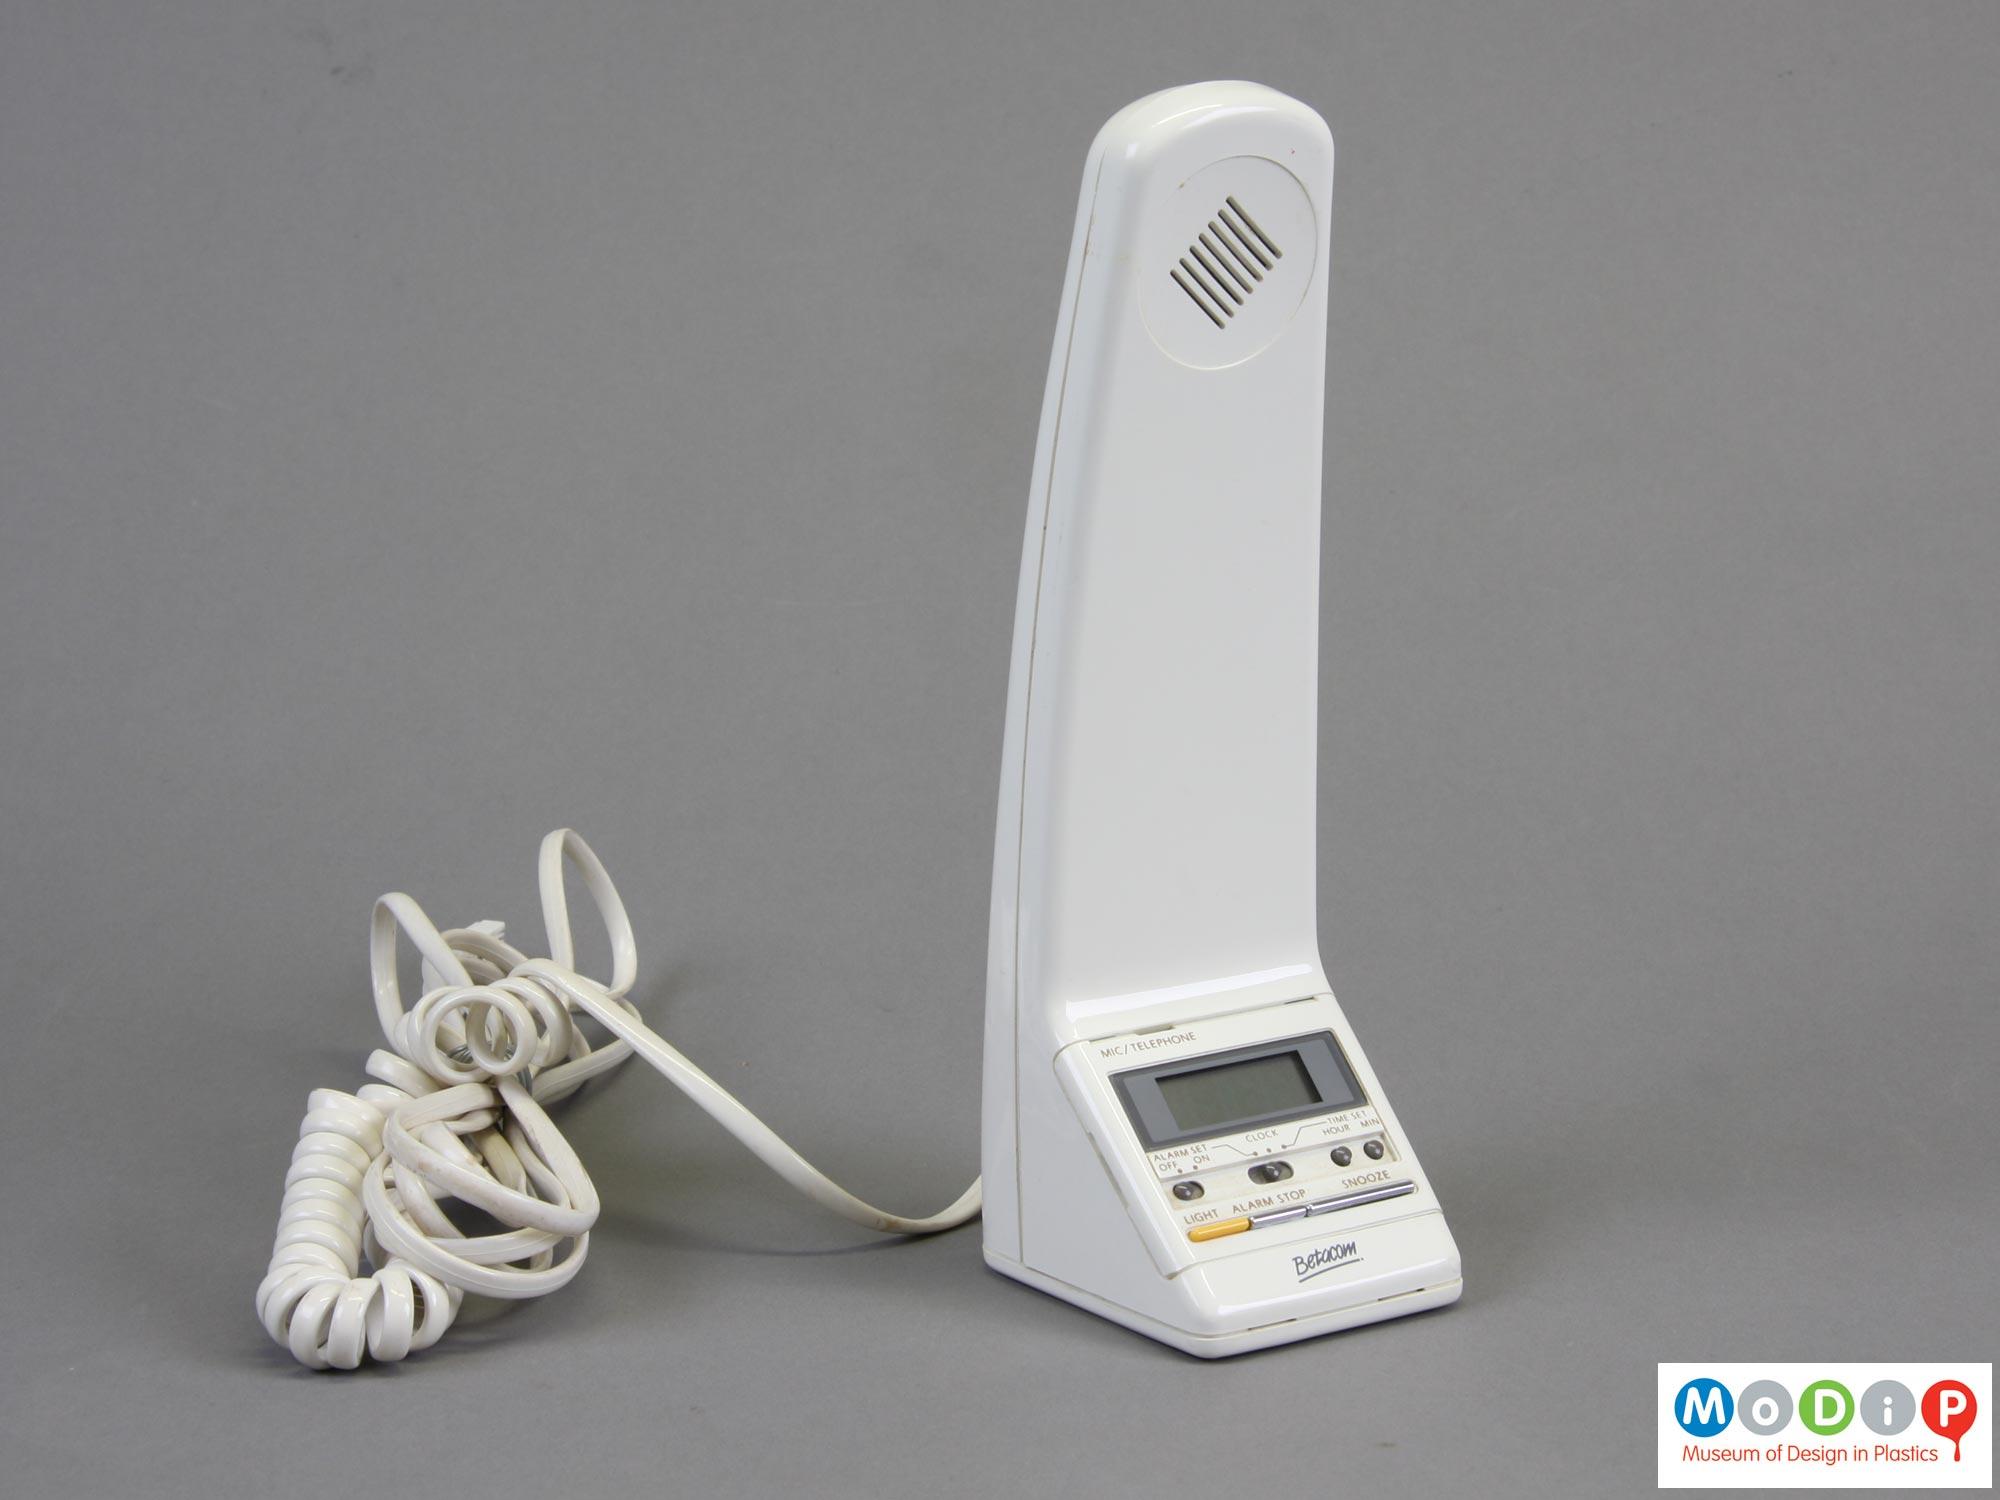 Betacom Model no. PC 001 telephone